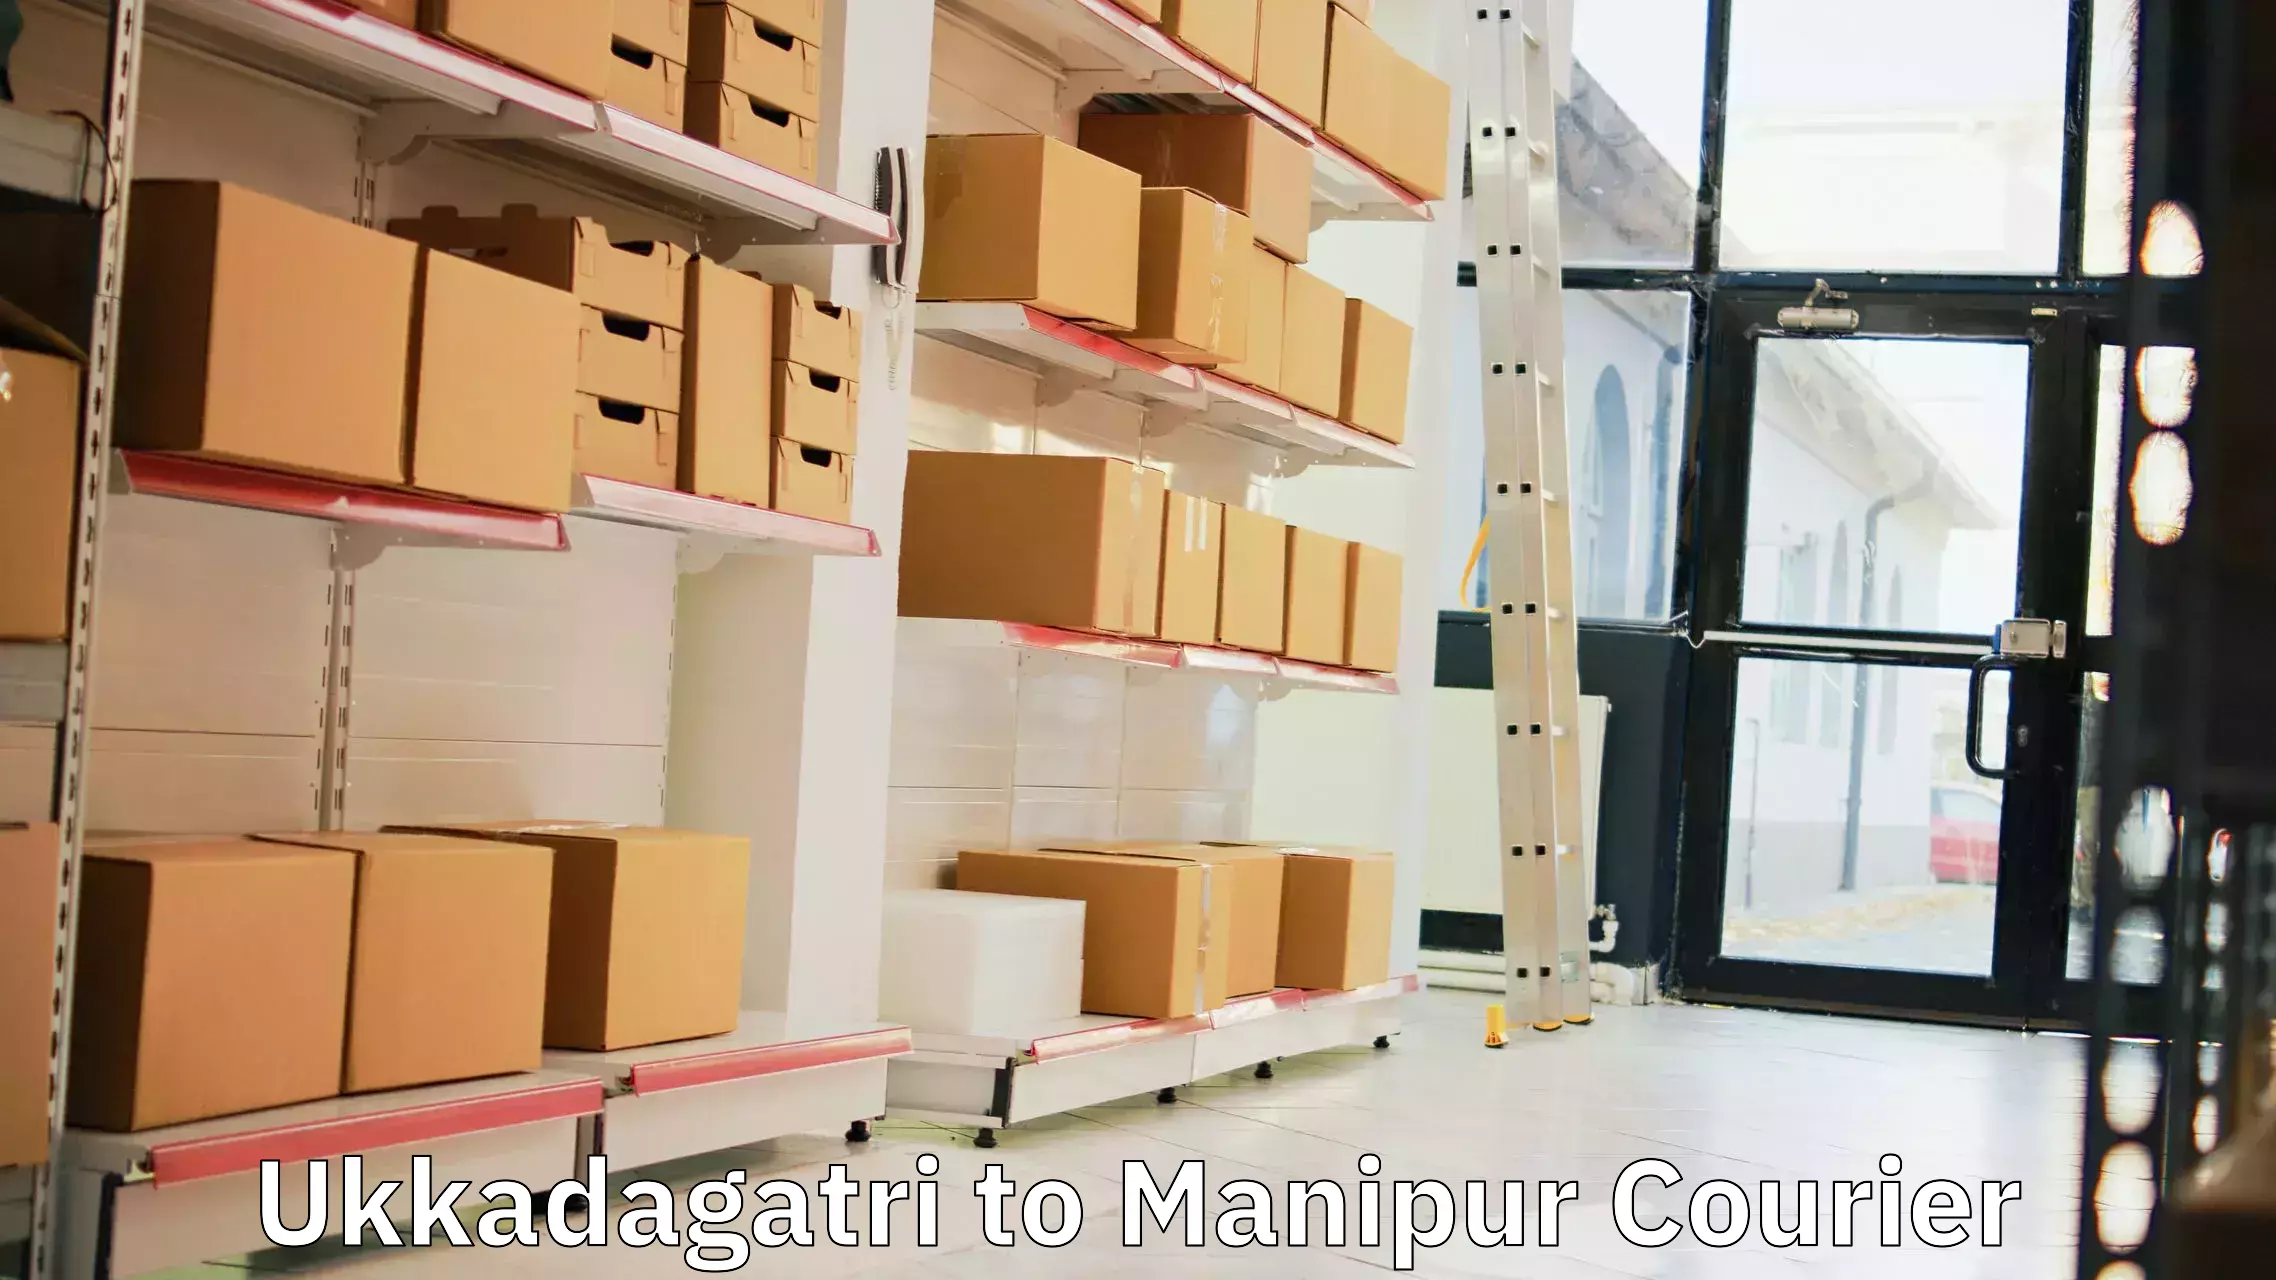 Comprehensive freight services Ukkadagatri to Manipur